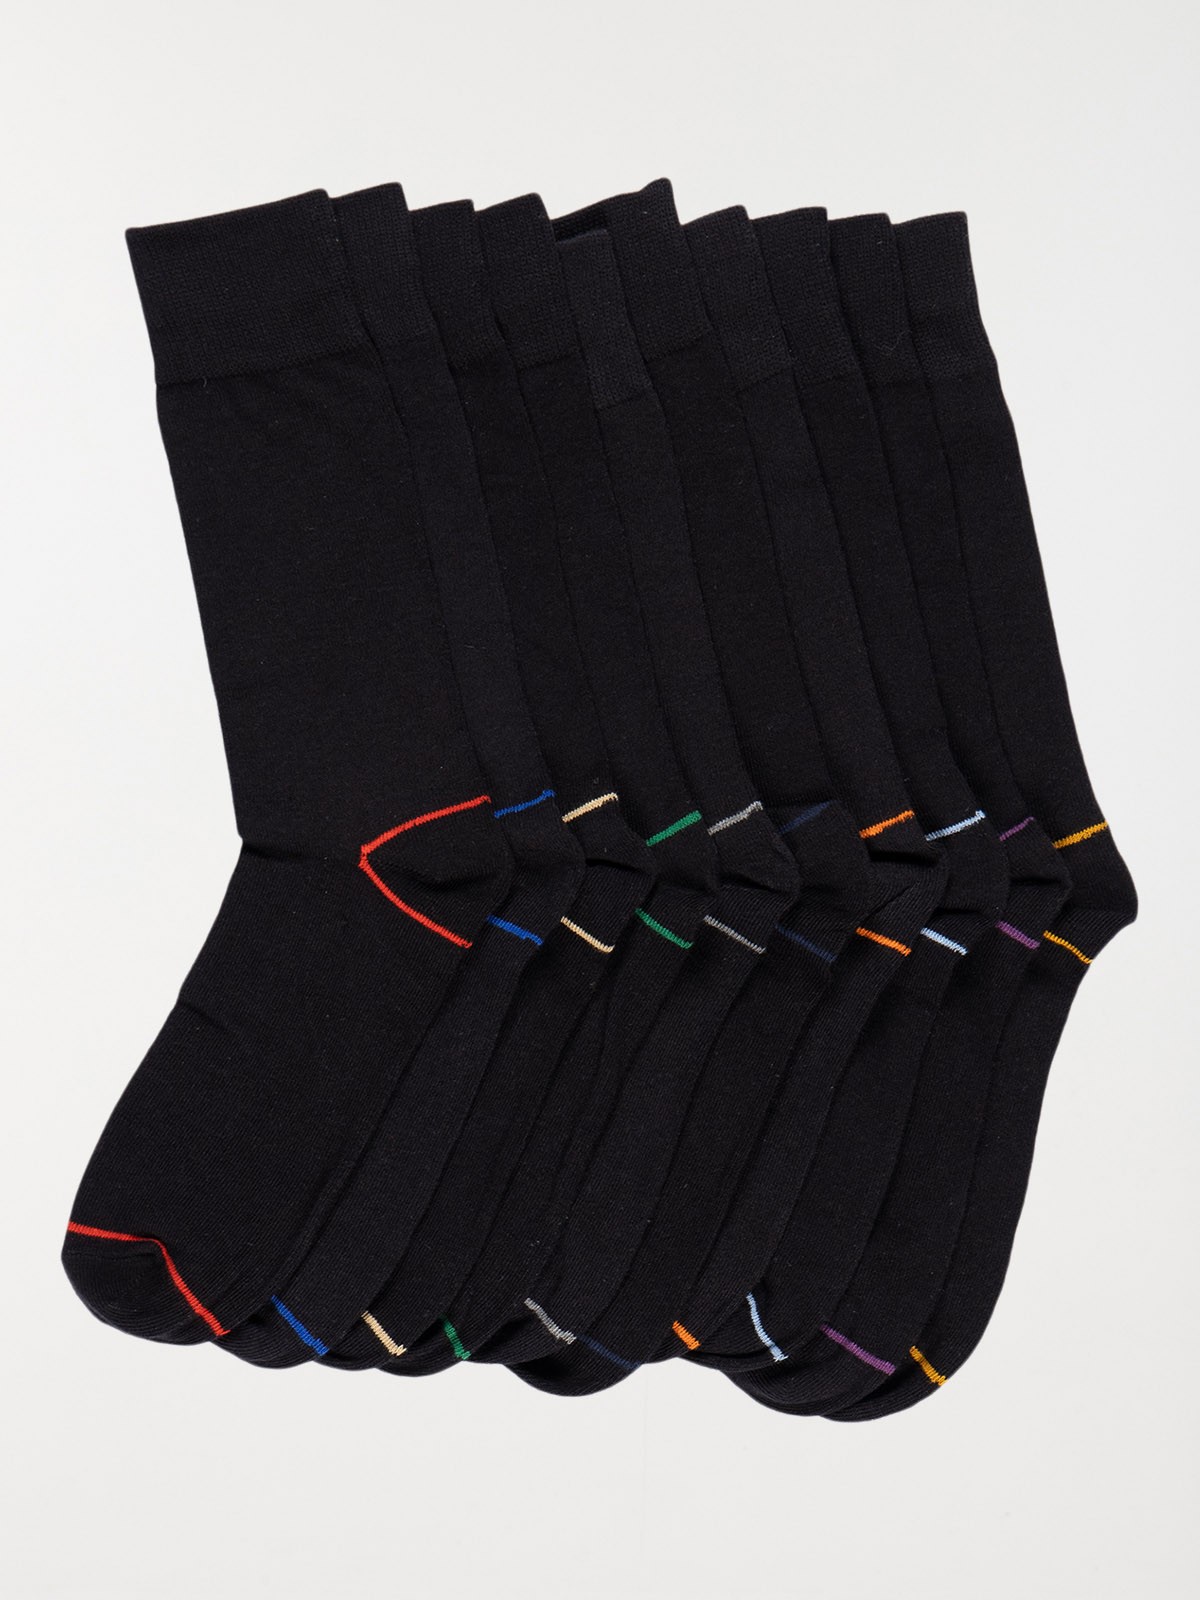 15 paires de chaussettes homme - Outspot